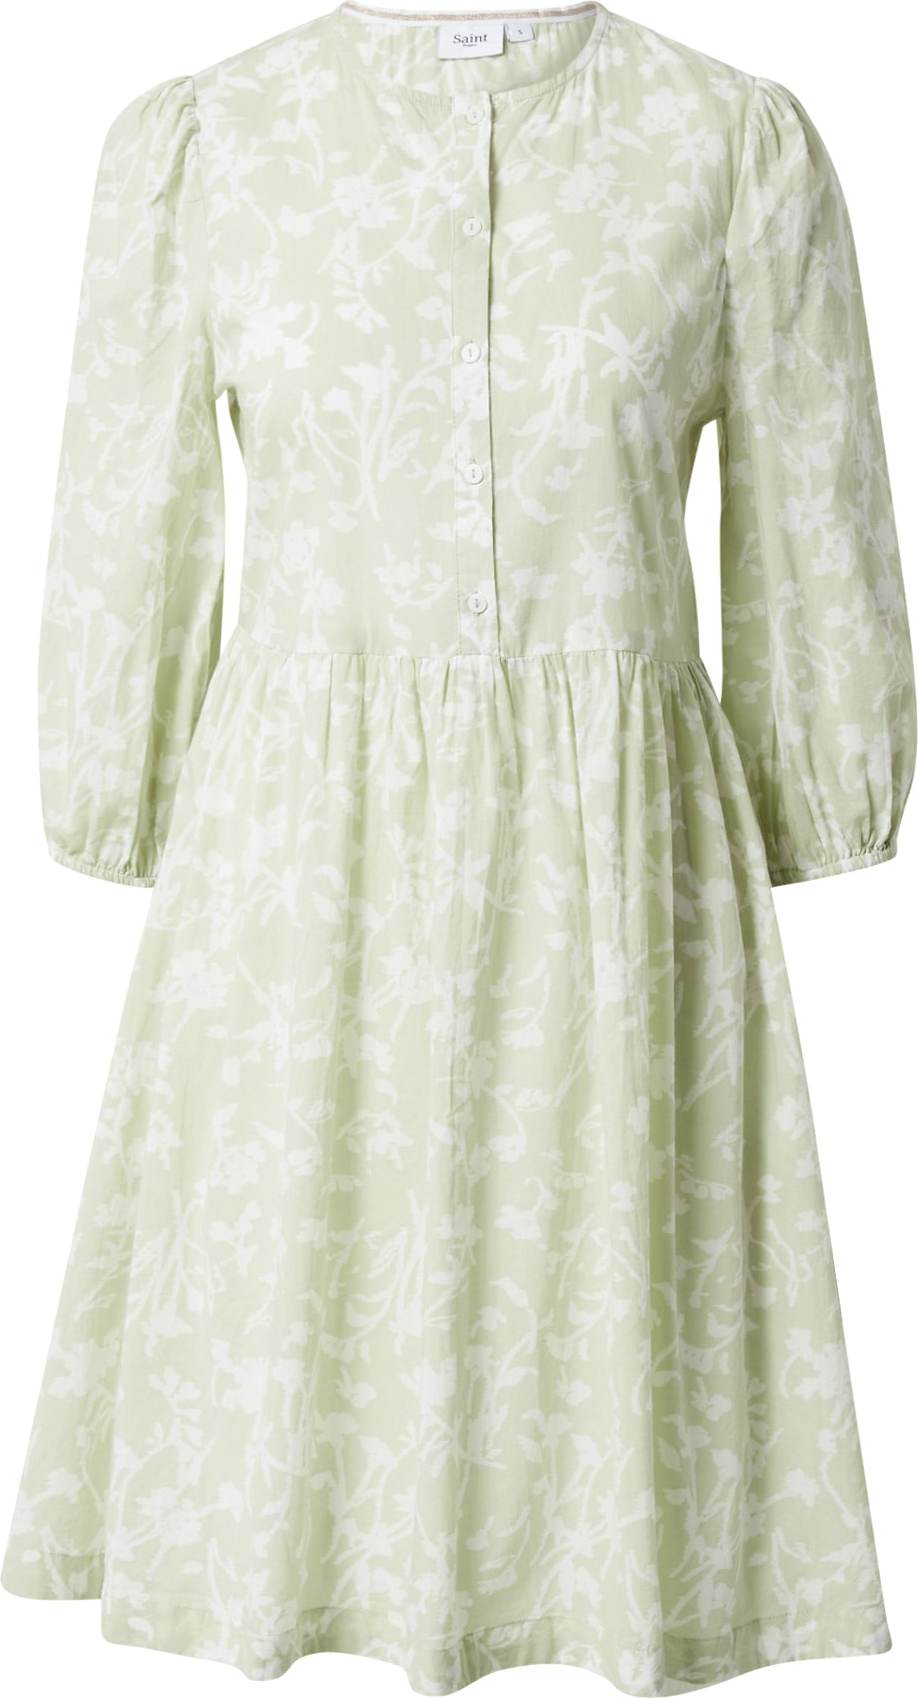 SAINT TROPEZ Košilové šaty 'MaiSZ' pastelově zelená / bílá